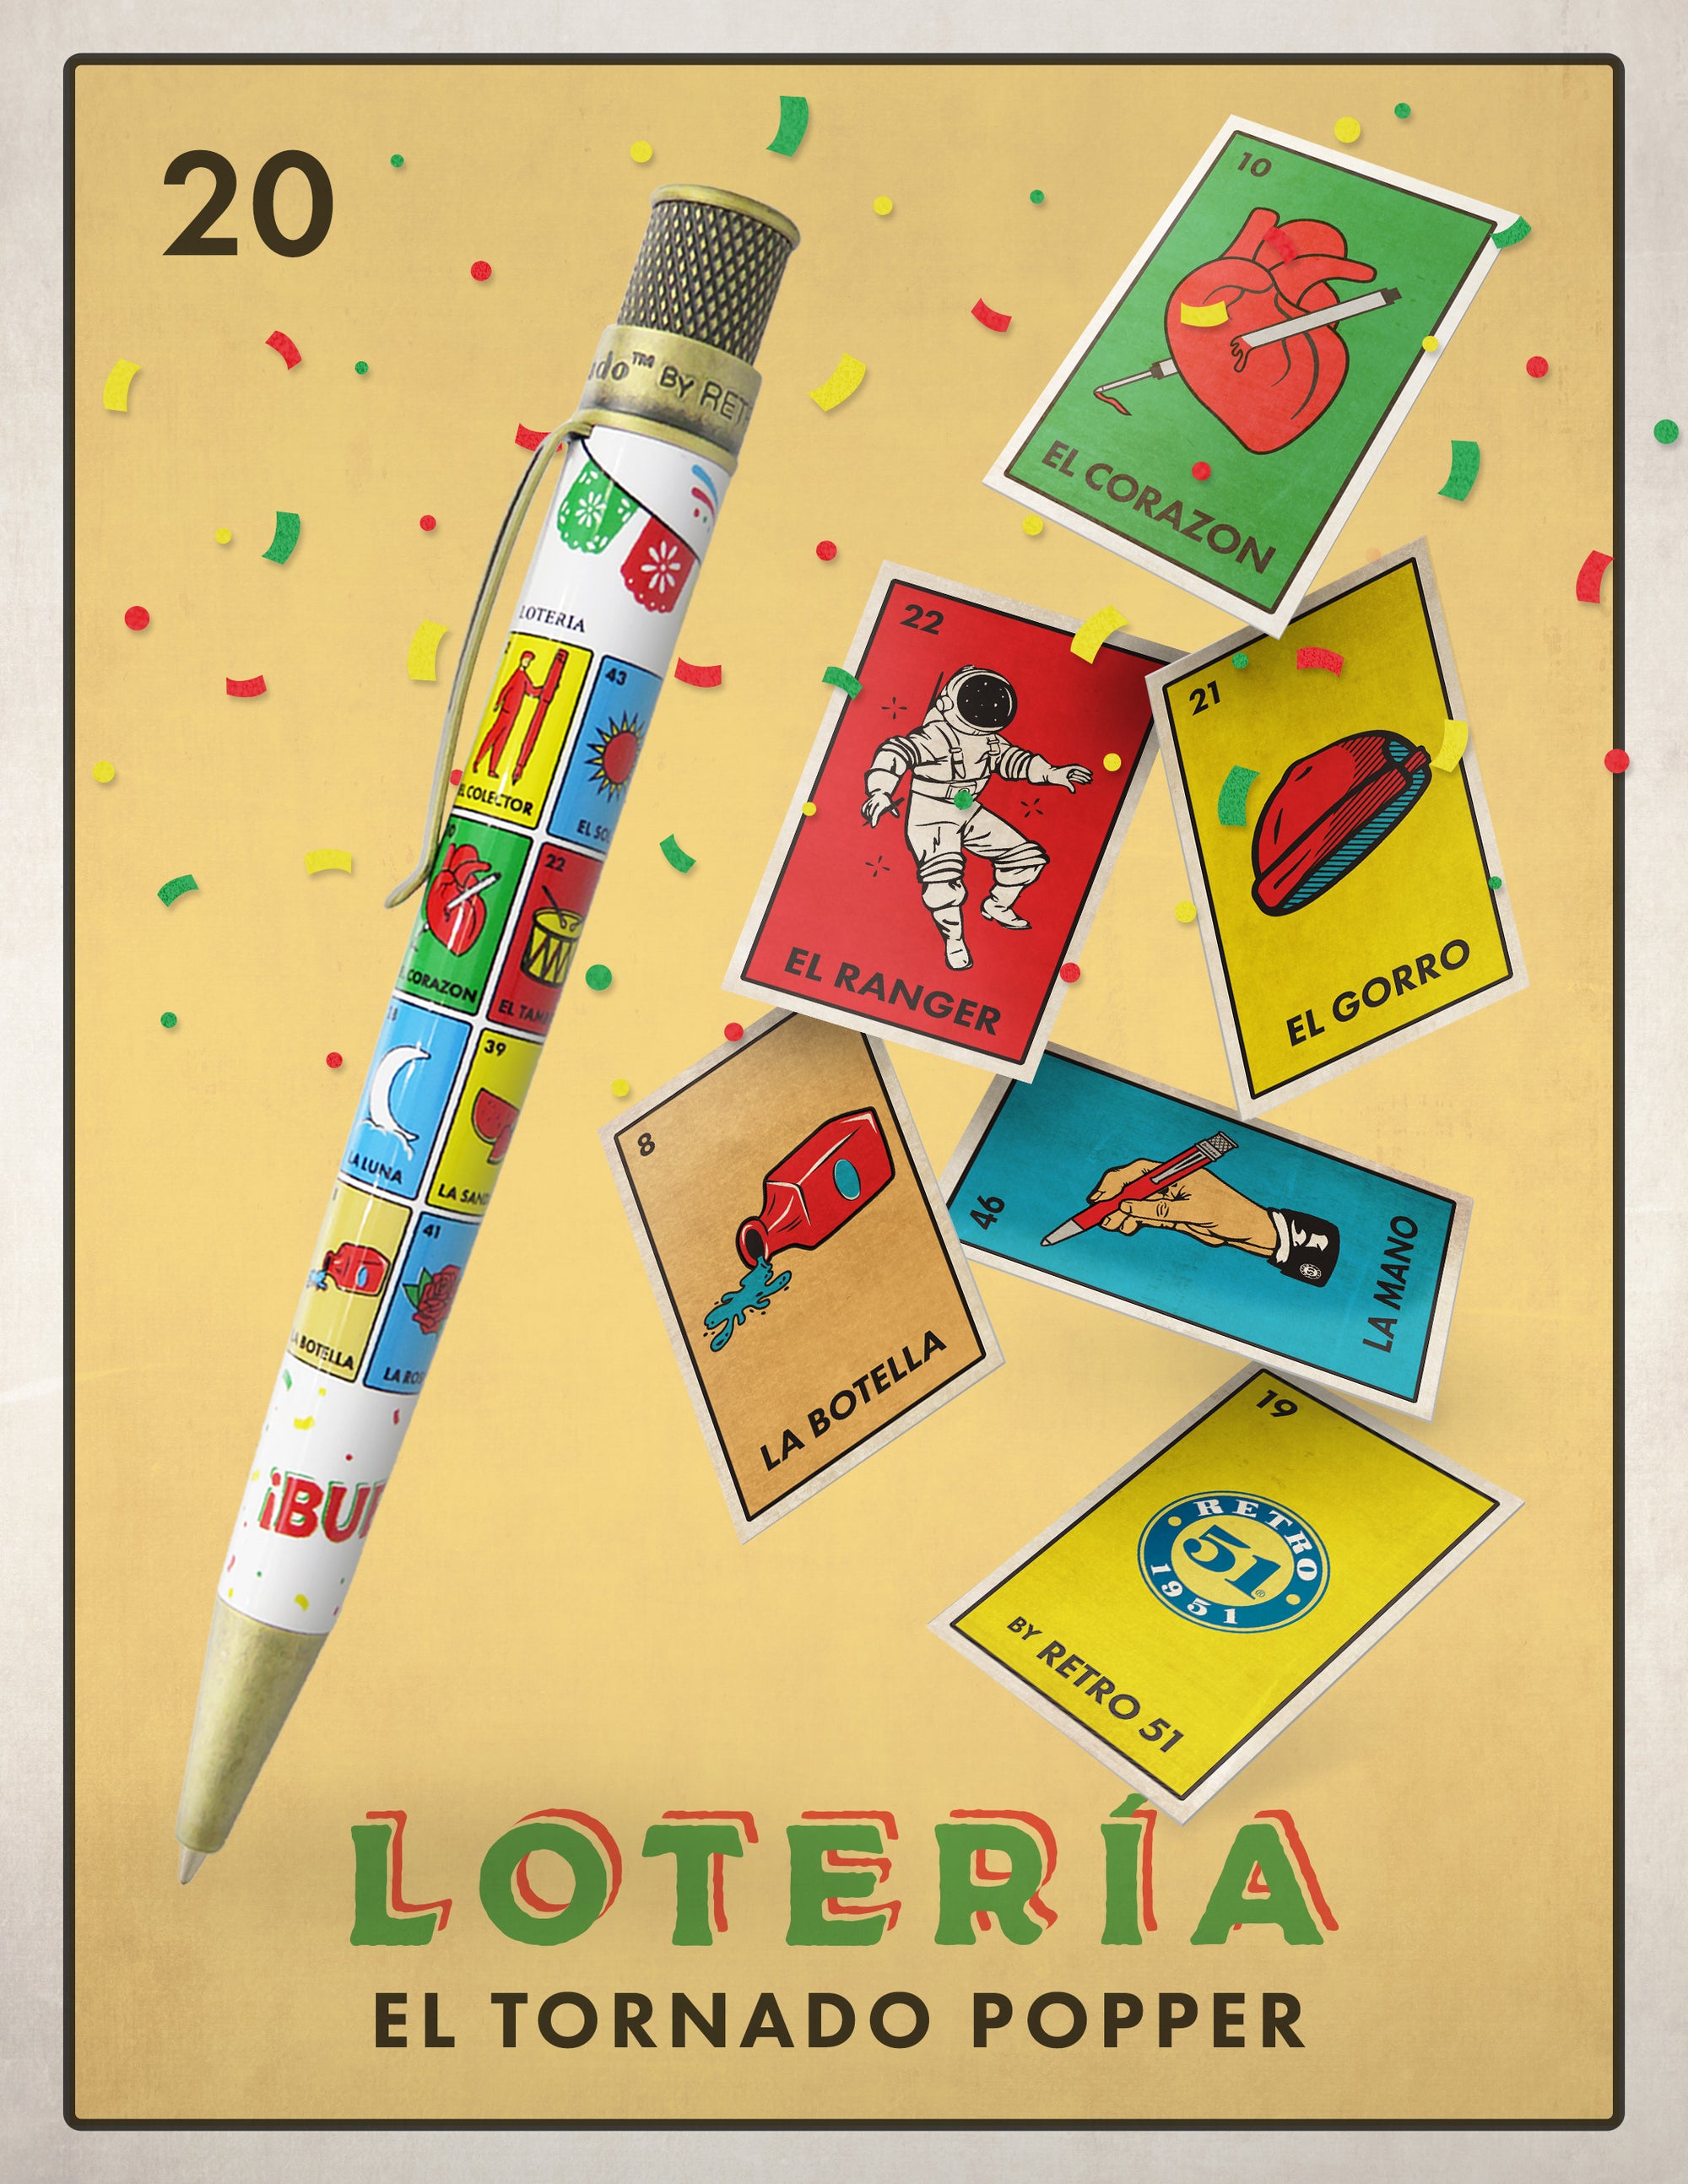 Retro 51 La Loteria Limited Edition Tornado Popper Rollerball Pen